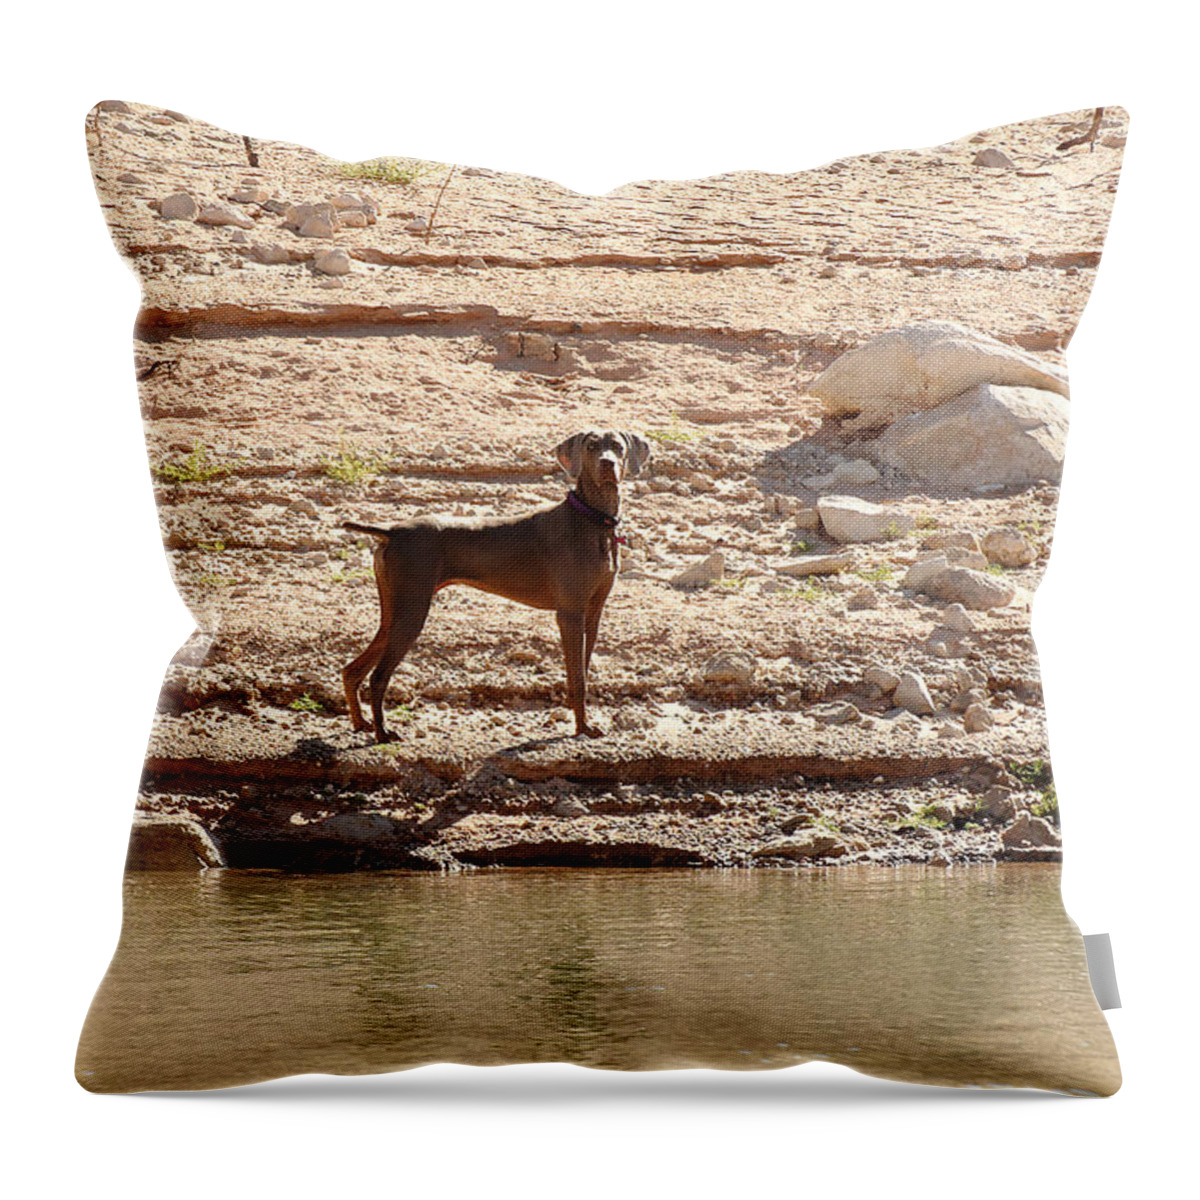 Landscape Throw Pillow featuring the photograph Bird Dog 2 by Julie Niemela